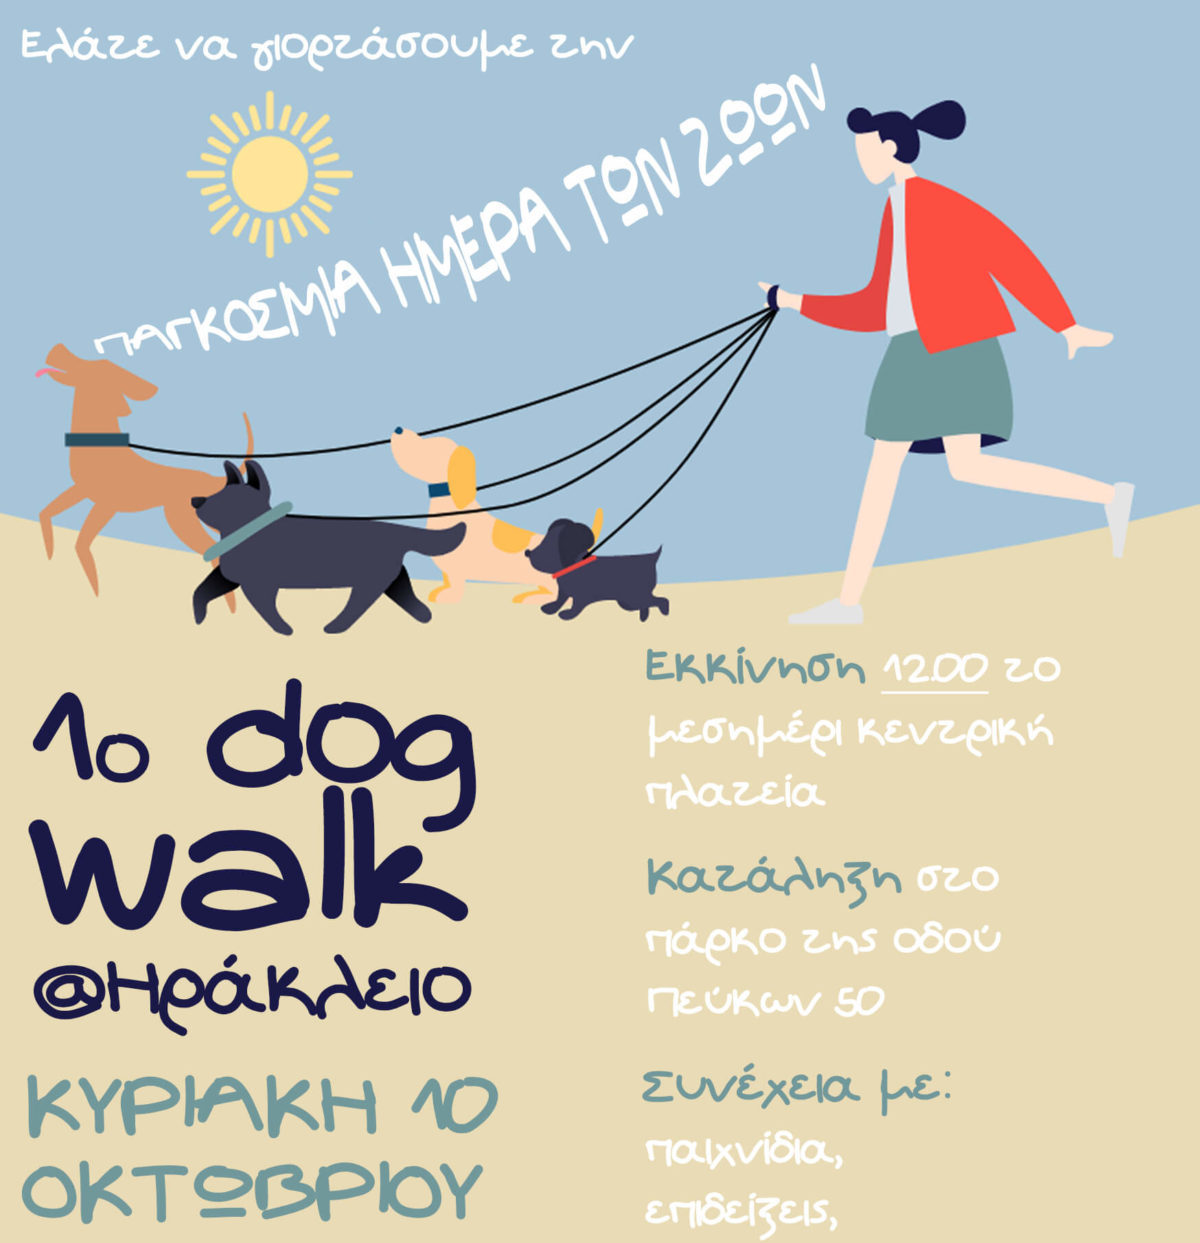 1ο Dog Walk στο Δήμο Ηρακλείου Αττικής: Κυριακή 10/10 μια ημέρα αφιερωμένη στα ζώα